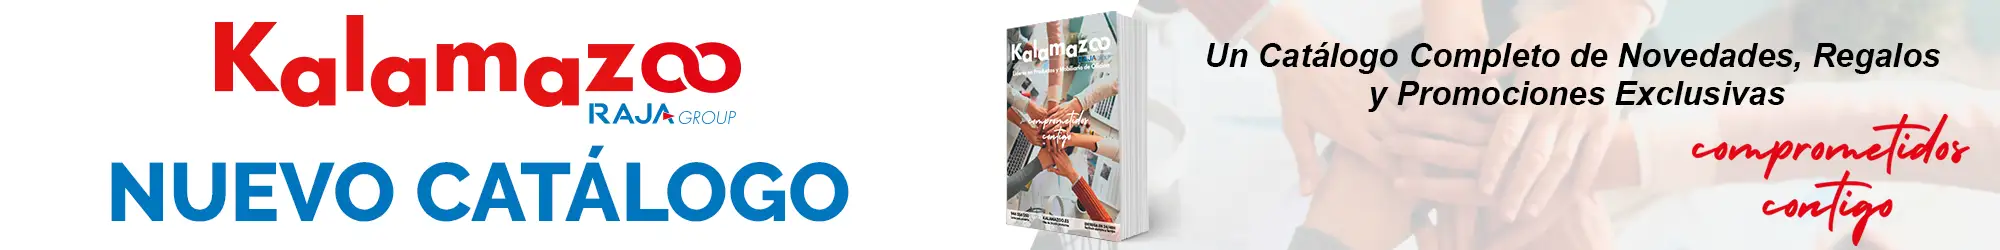 Nuevo Catálogo Kalamazoo